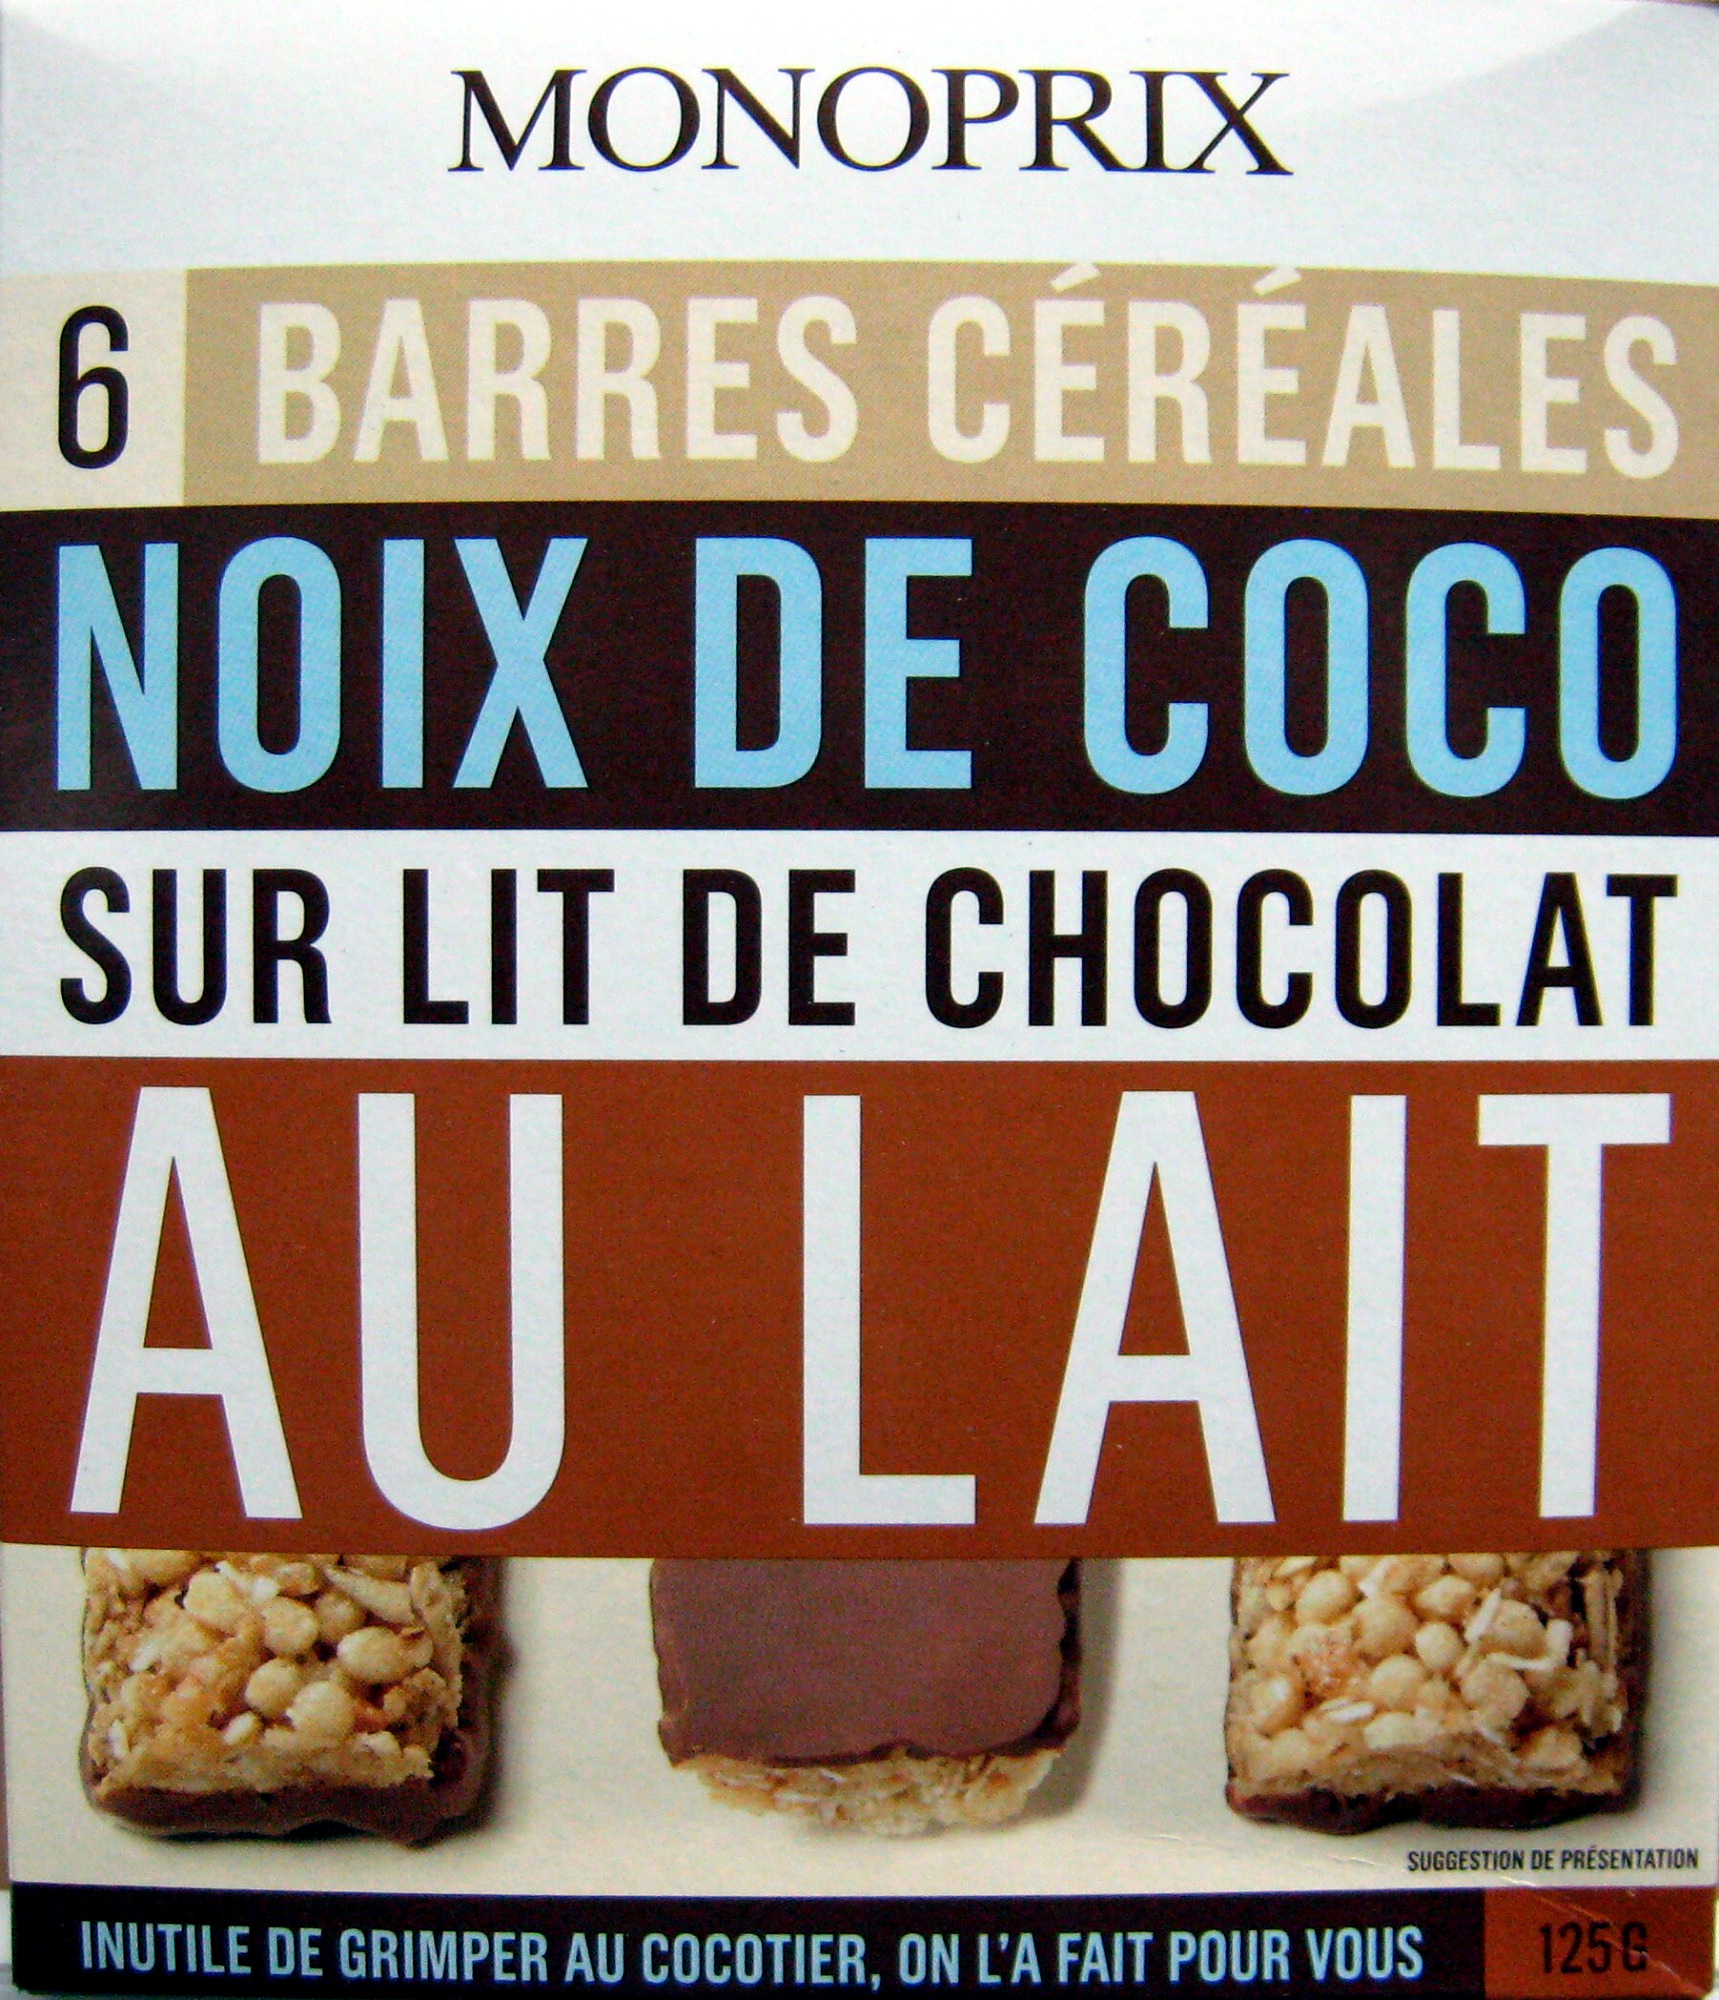 6 Barres céréales Noix de coco sur lit de chocolat au lait Monoprix - Product - fr